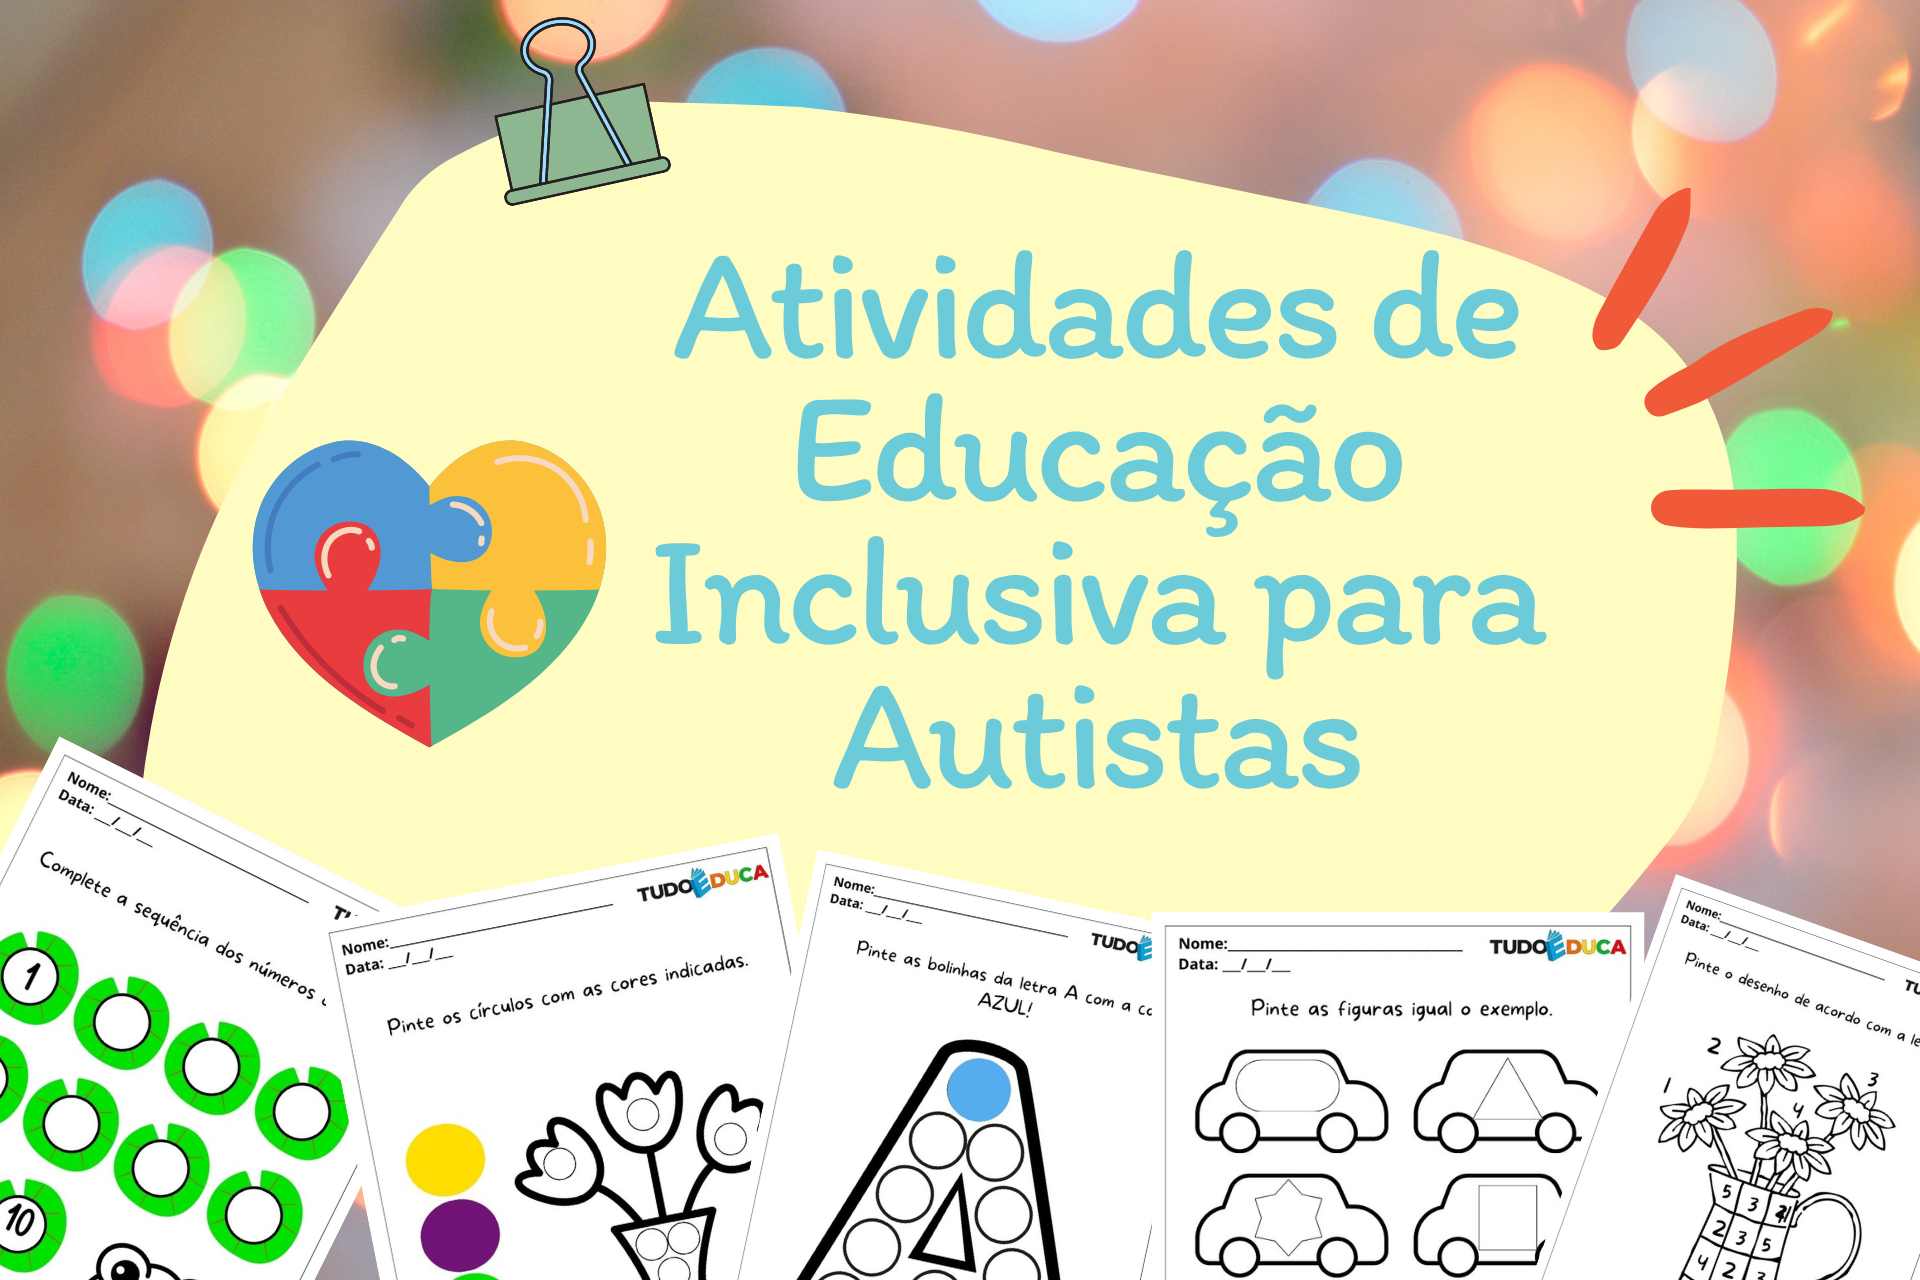 Atividades de Educação Inclusiva para Autistas